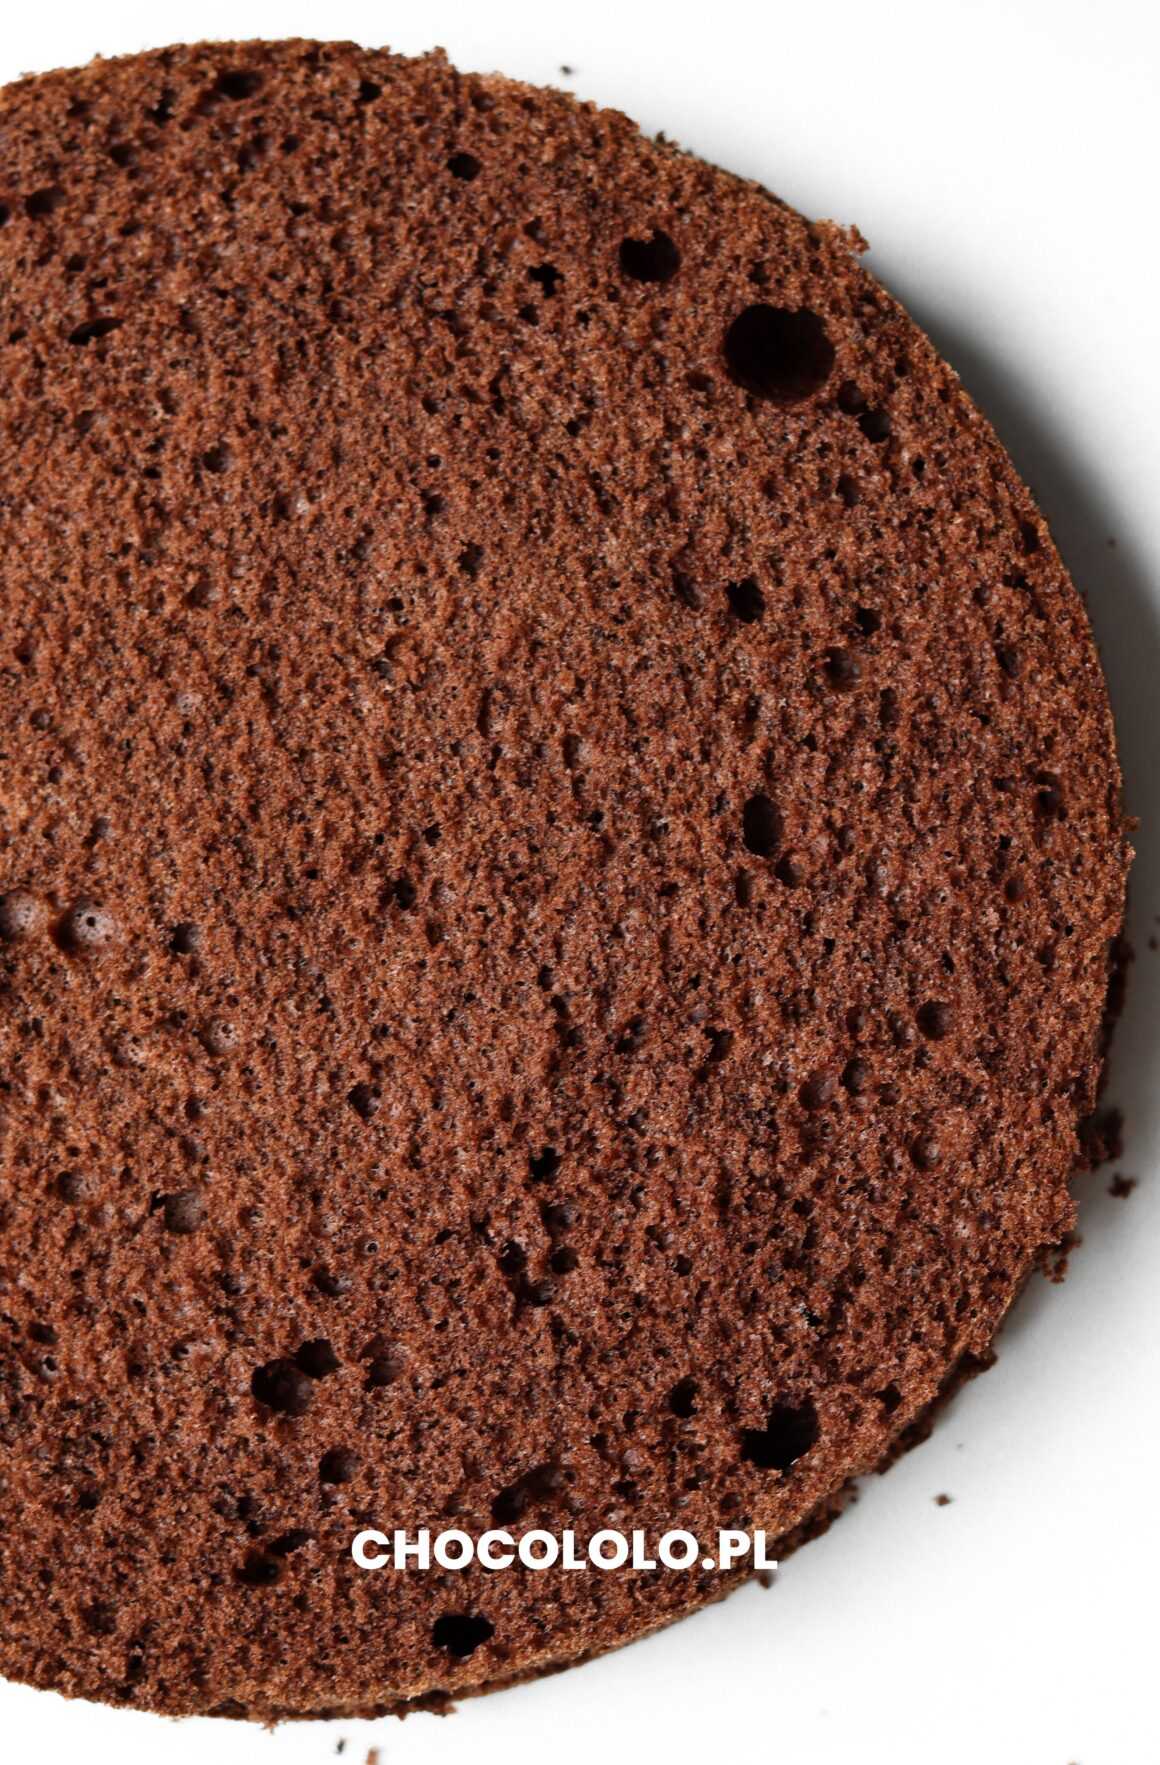 biszkopt kakaowy bez proszku do pieczenia